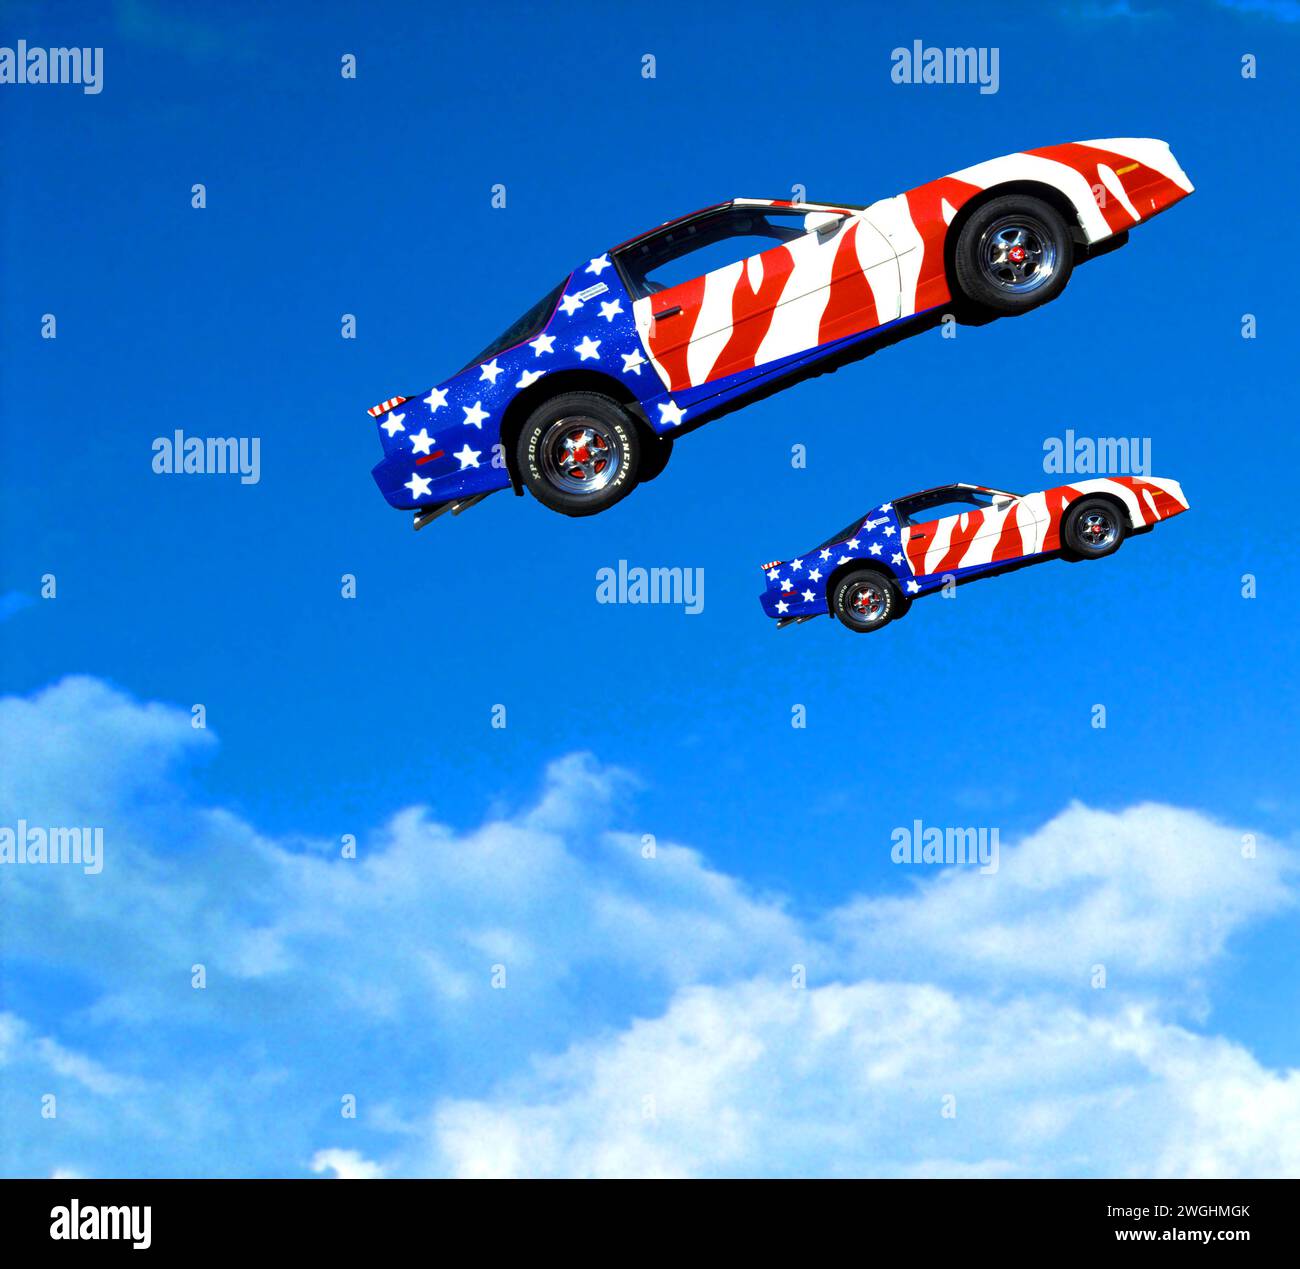 Les voitures musculaires, peut-être Ford Mustang, peintes avec des étoiles et des rayures volent dans les airs Banque D'Images